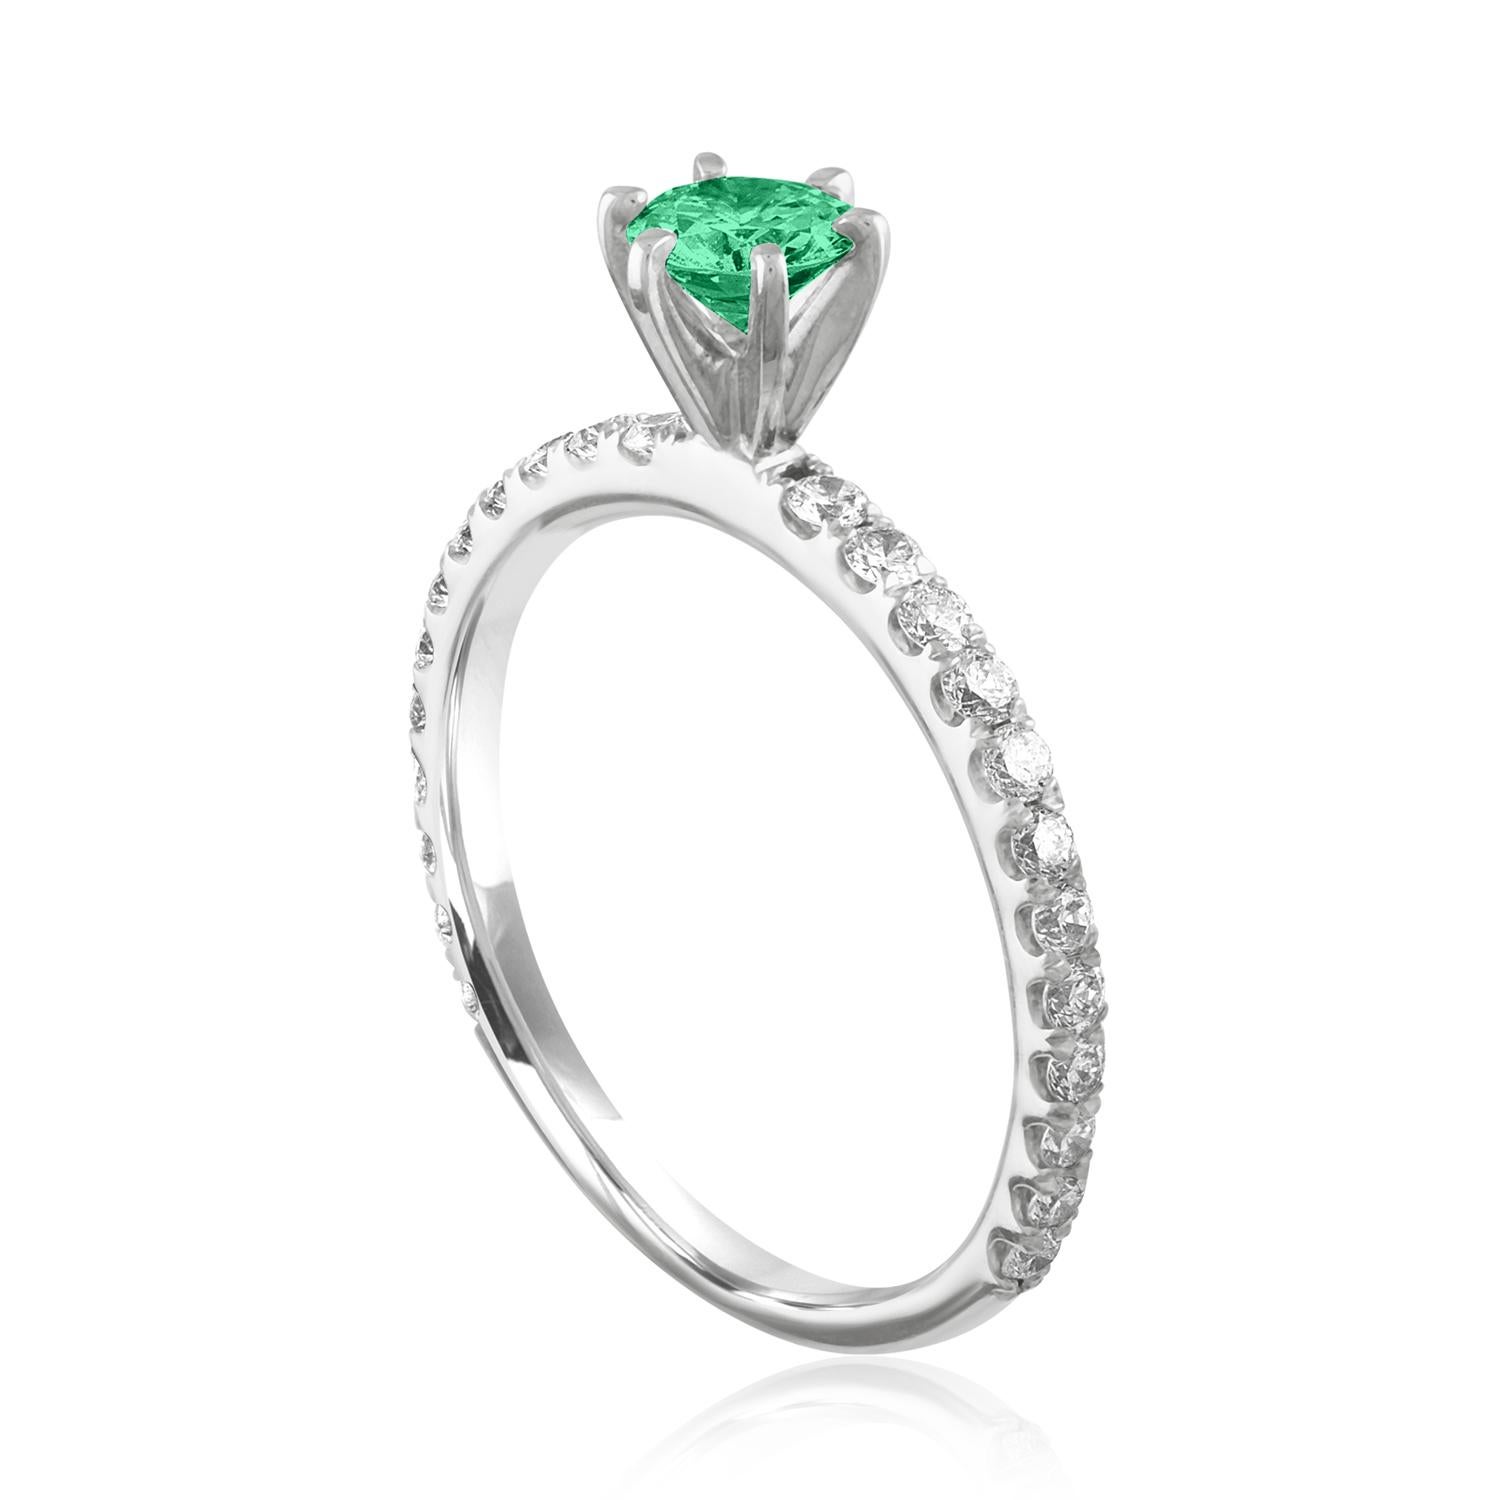 Schöner Diamant & Smaragd Ring
Der Ring ist aus 18 Karat Weißgold.
Es sind 0.45 Karat in Diamanten F/G VS/SI
Das Zentrum ist rund 0.46 Karat Smaragd.
Der Smaragd ist AGL-zertifiziert.
Der Ring ist eine Größe 6.00, sizable.
Der Ring wiegt 1.9 Gramm.